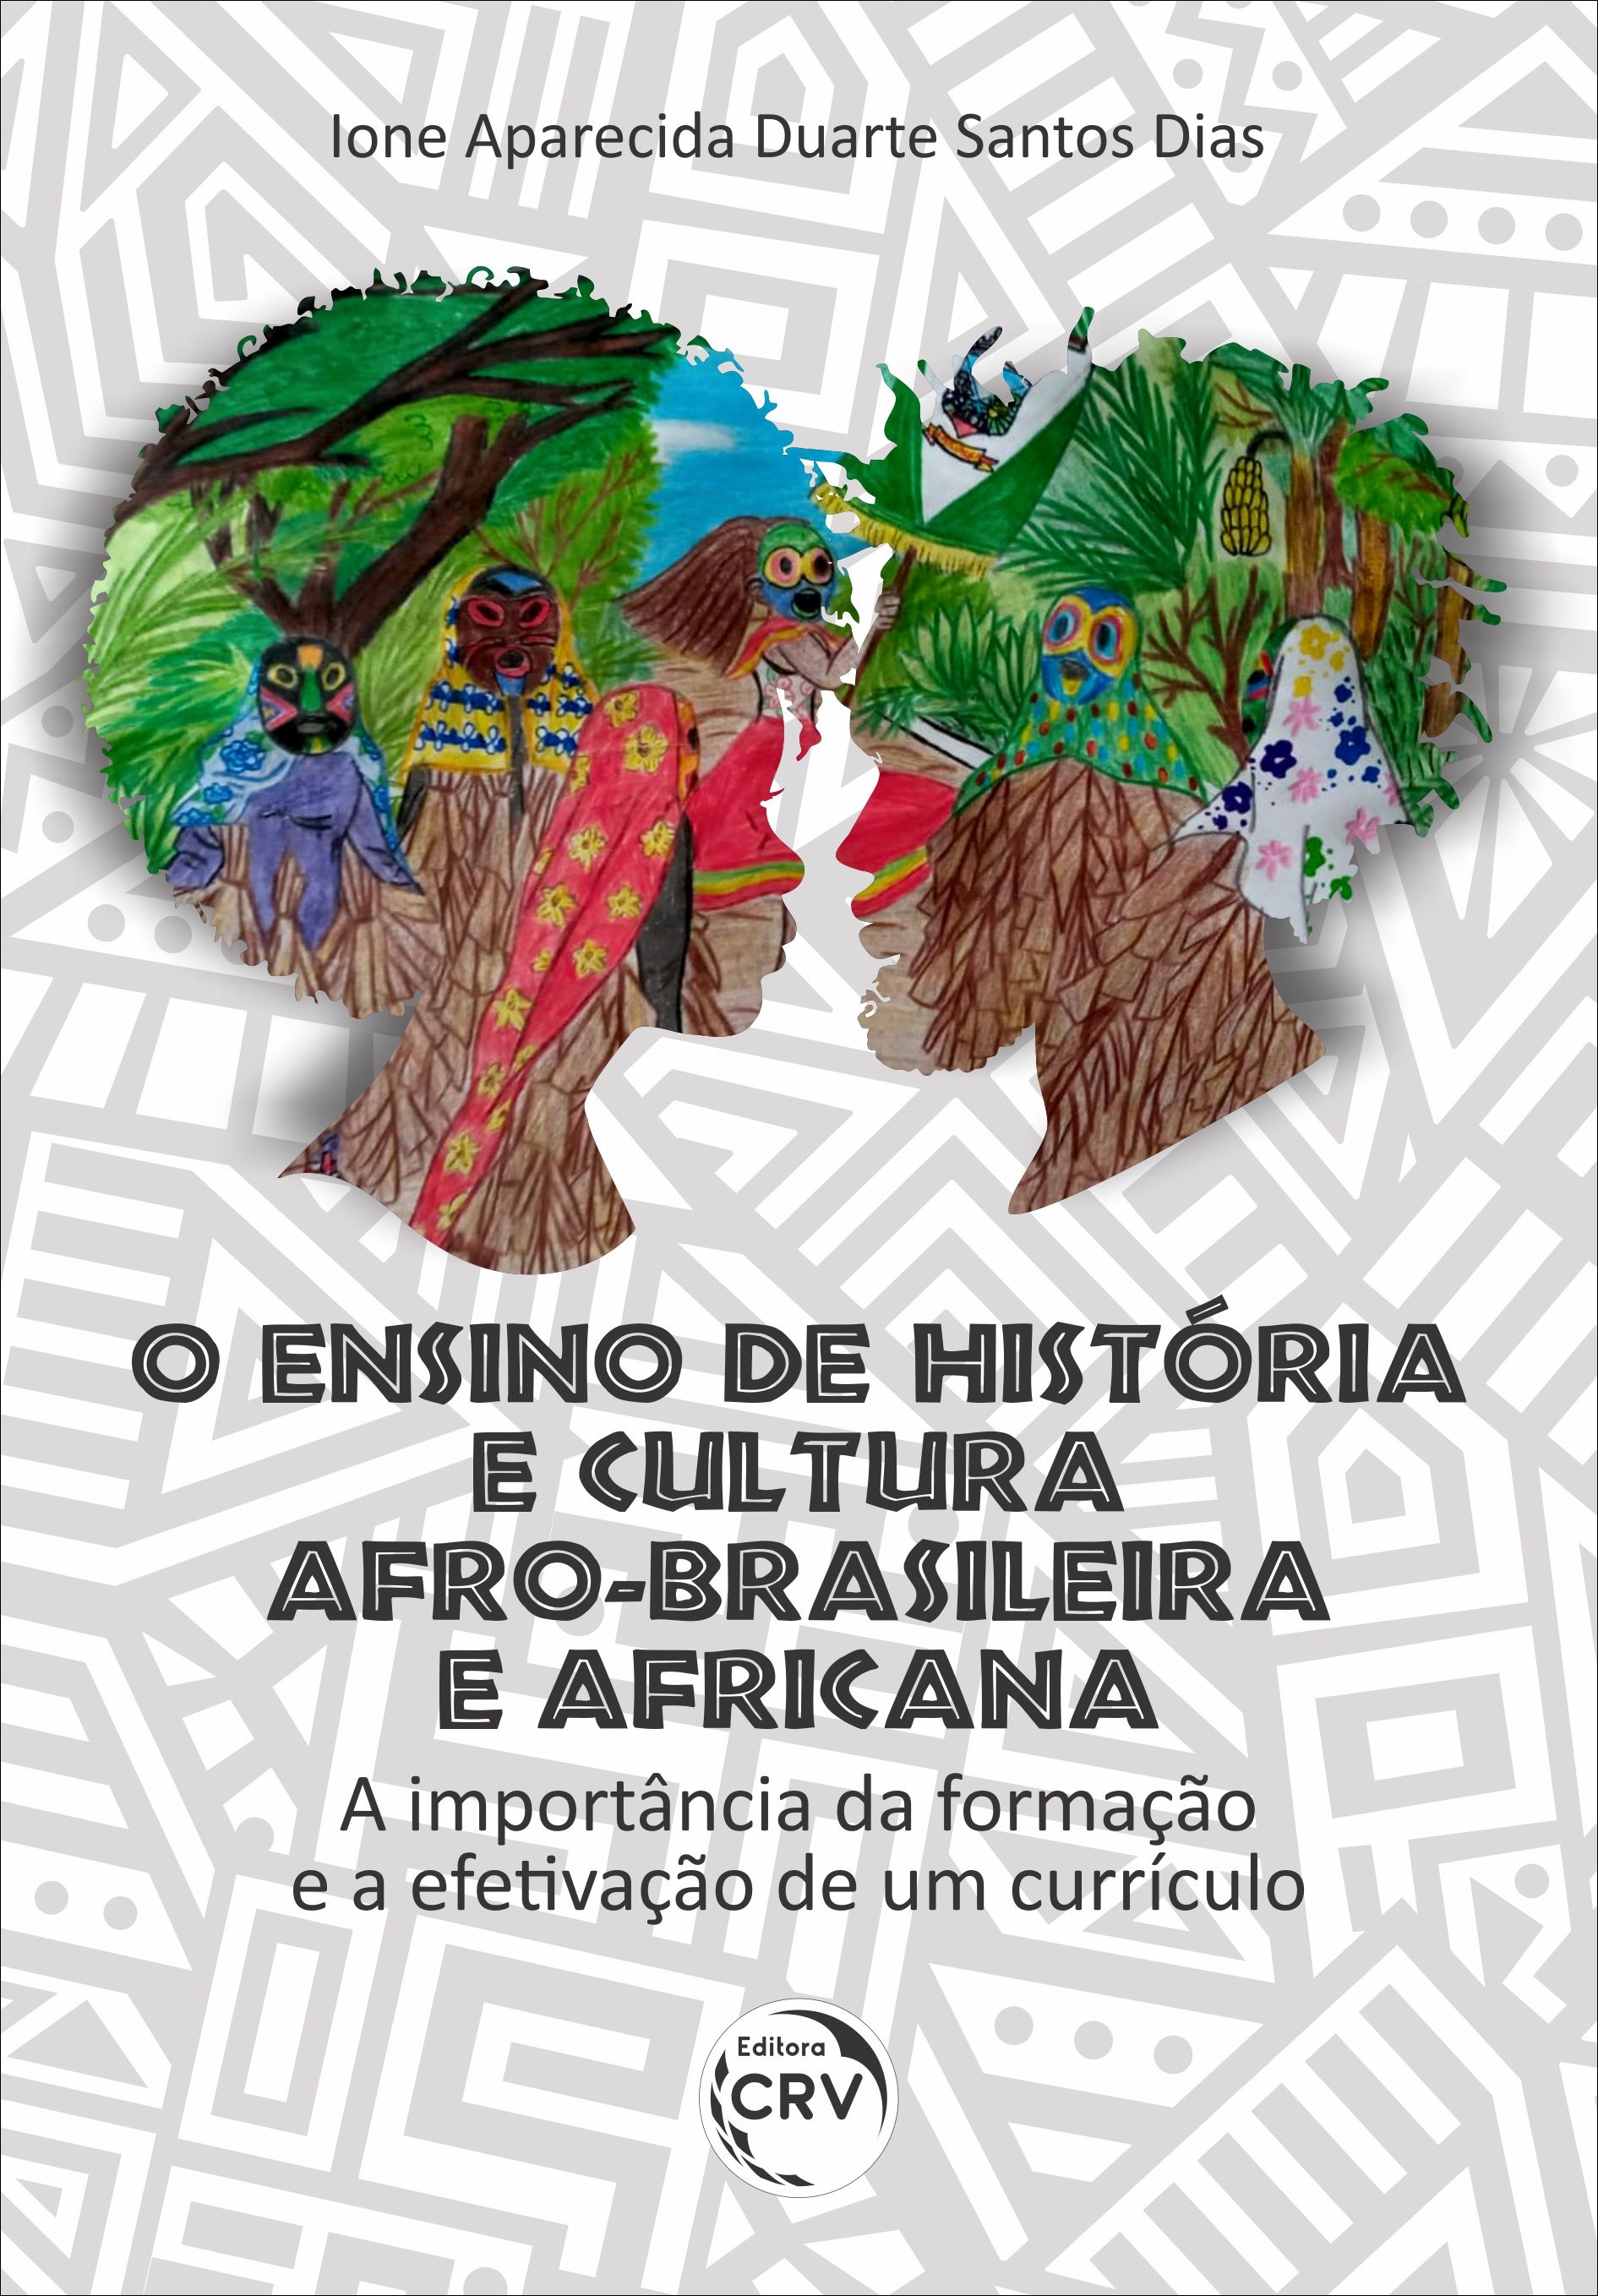 Capa do livro: O ENSINO DE HISTÓRIA E CULTURA AFRO-BRASILEIRA E AFRICANA: <br>a importância da formação e a efetivação de um currículo